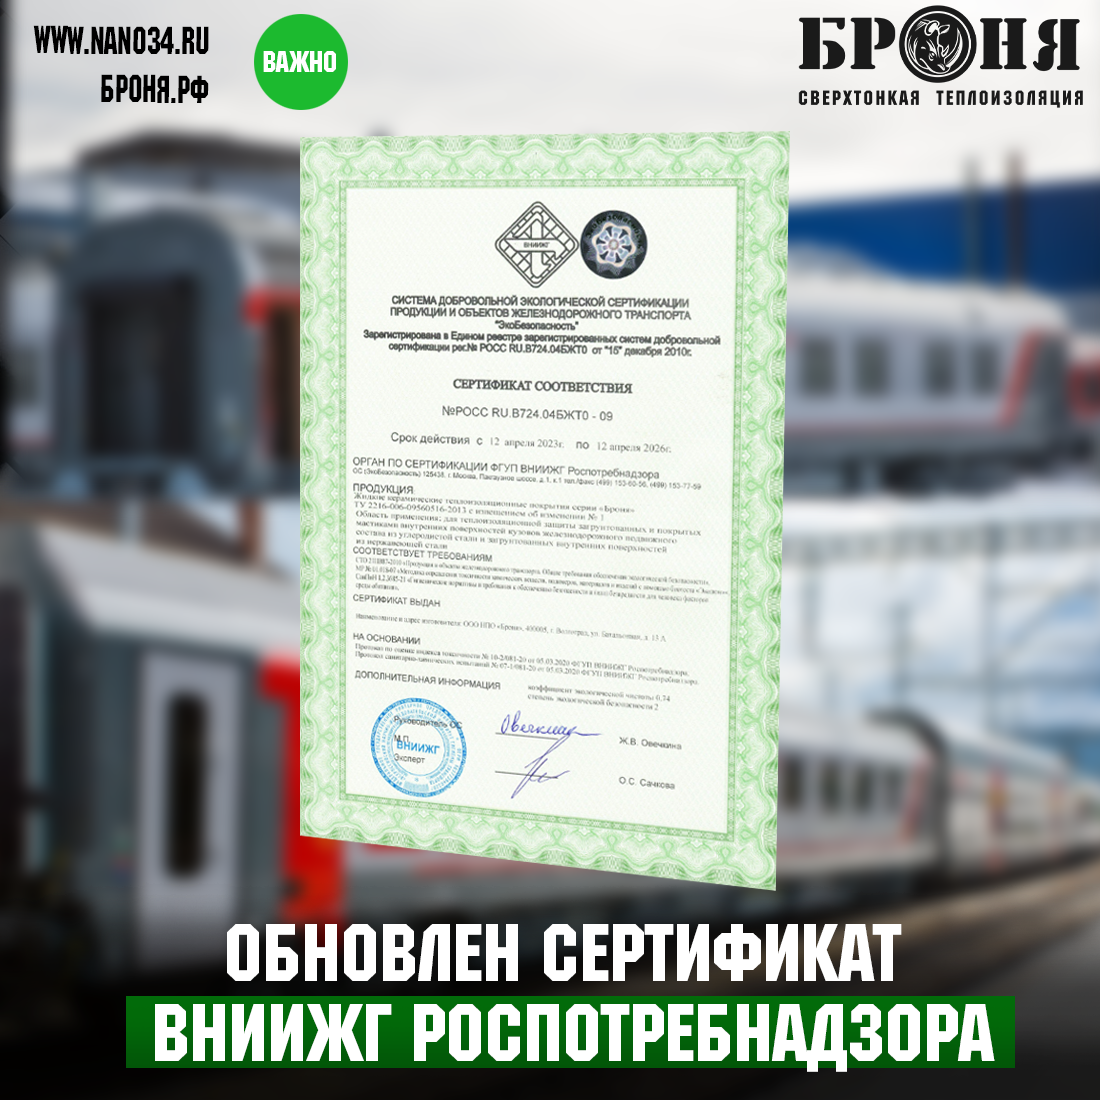 Компанией БРОНЯ продлен Сертификат Соответствии продукции и объектов железнодорожного транспорта, выданный ФГУП ВНИИЖГ Роспотребнадзором.